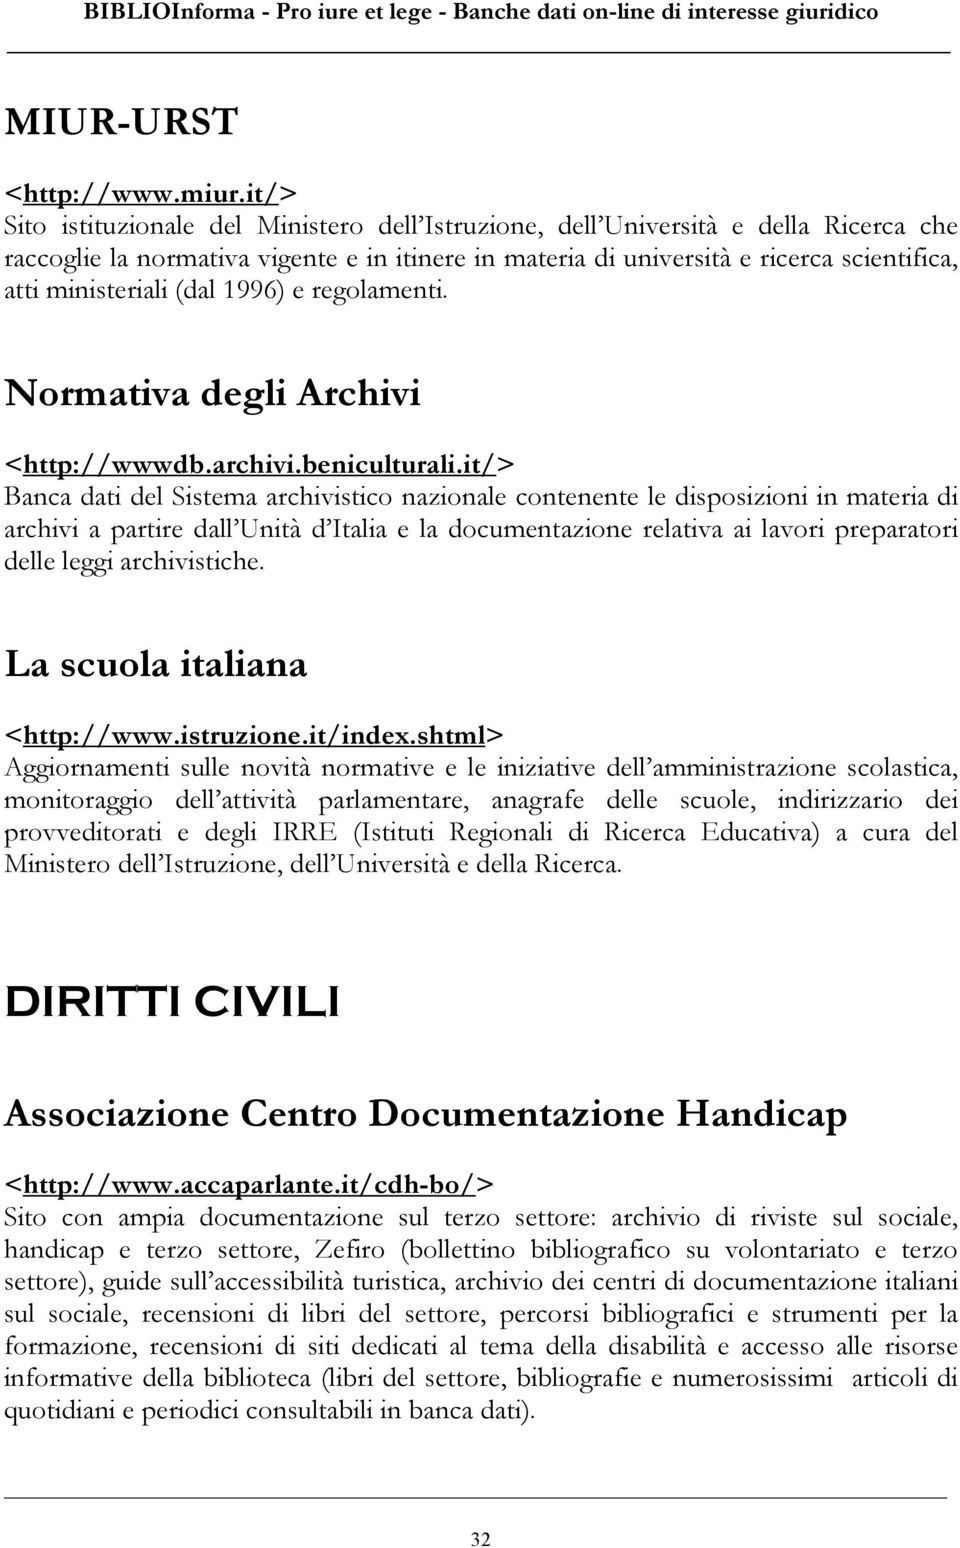 ministeriali (dal 1996) e regolamenti. Normativa degli Archivi <http://wwwdb.archivi.beniculturali.